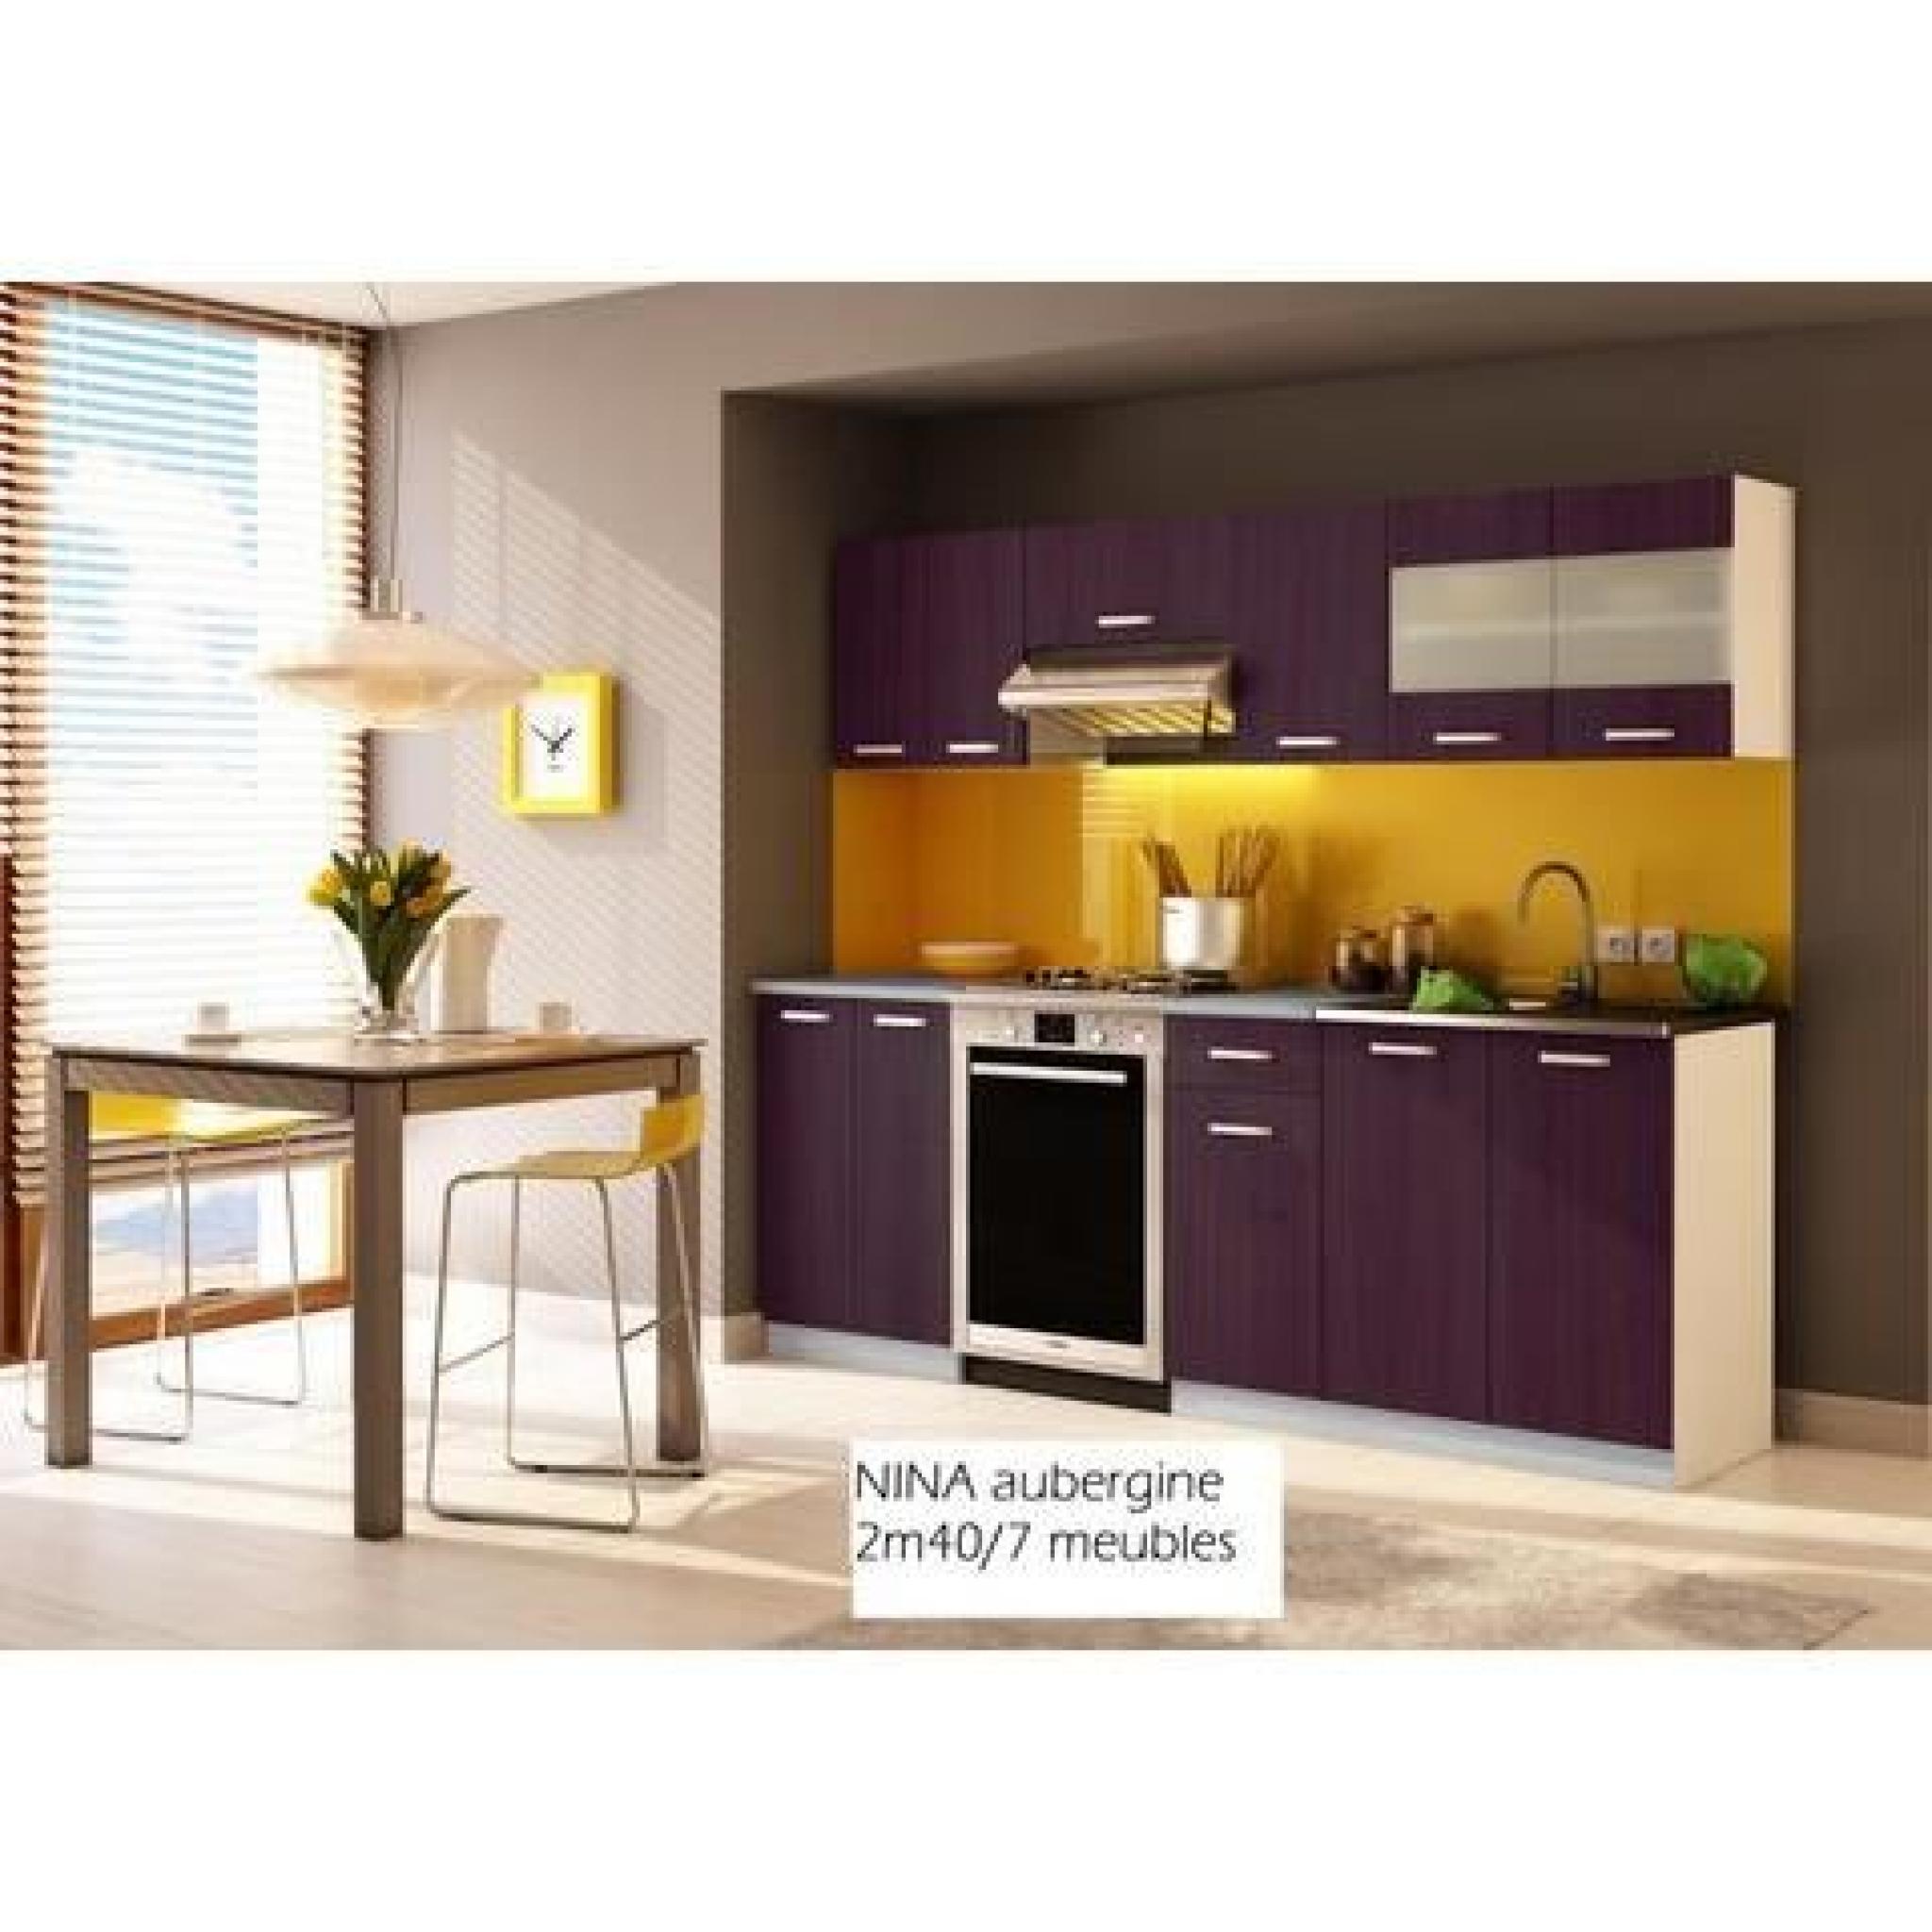 Cuisine complète NINA aubergine/2m40/7 meubles pas cher